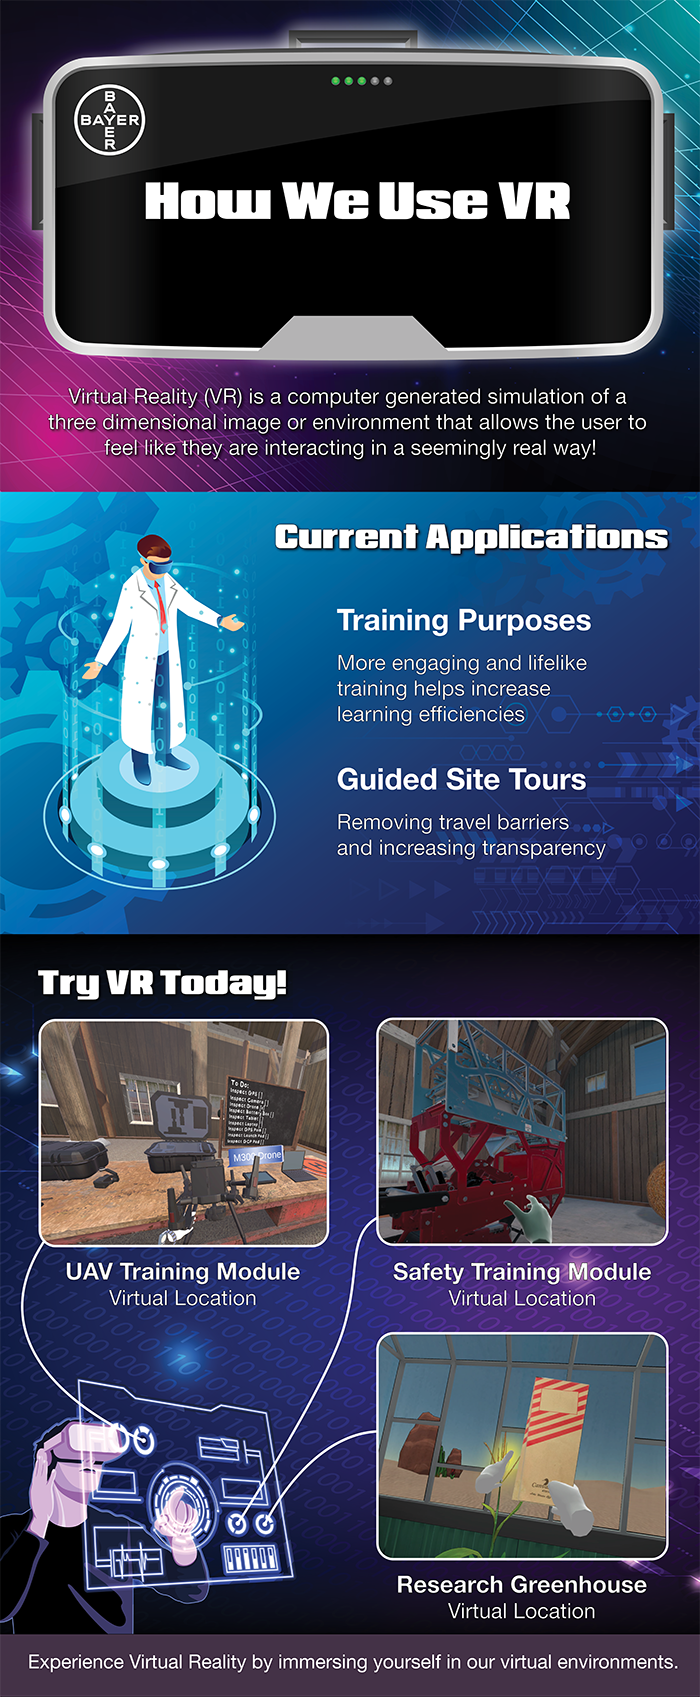 Bayer Virtual Reality